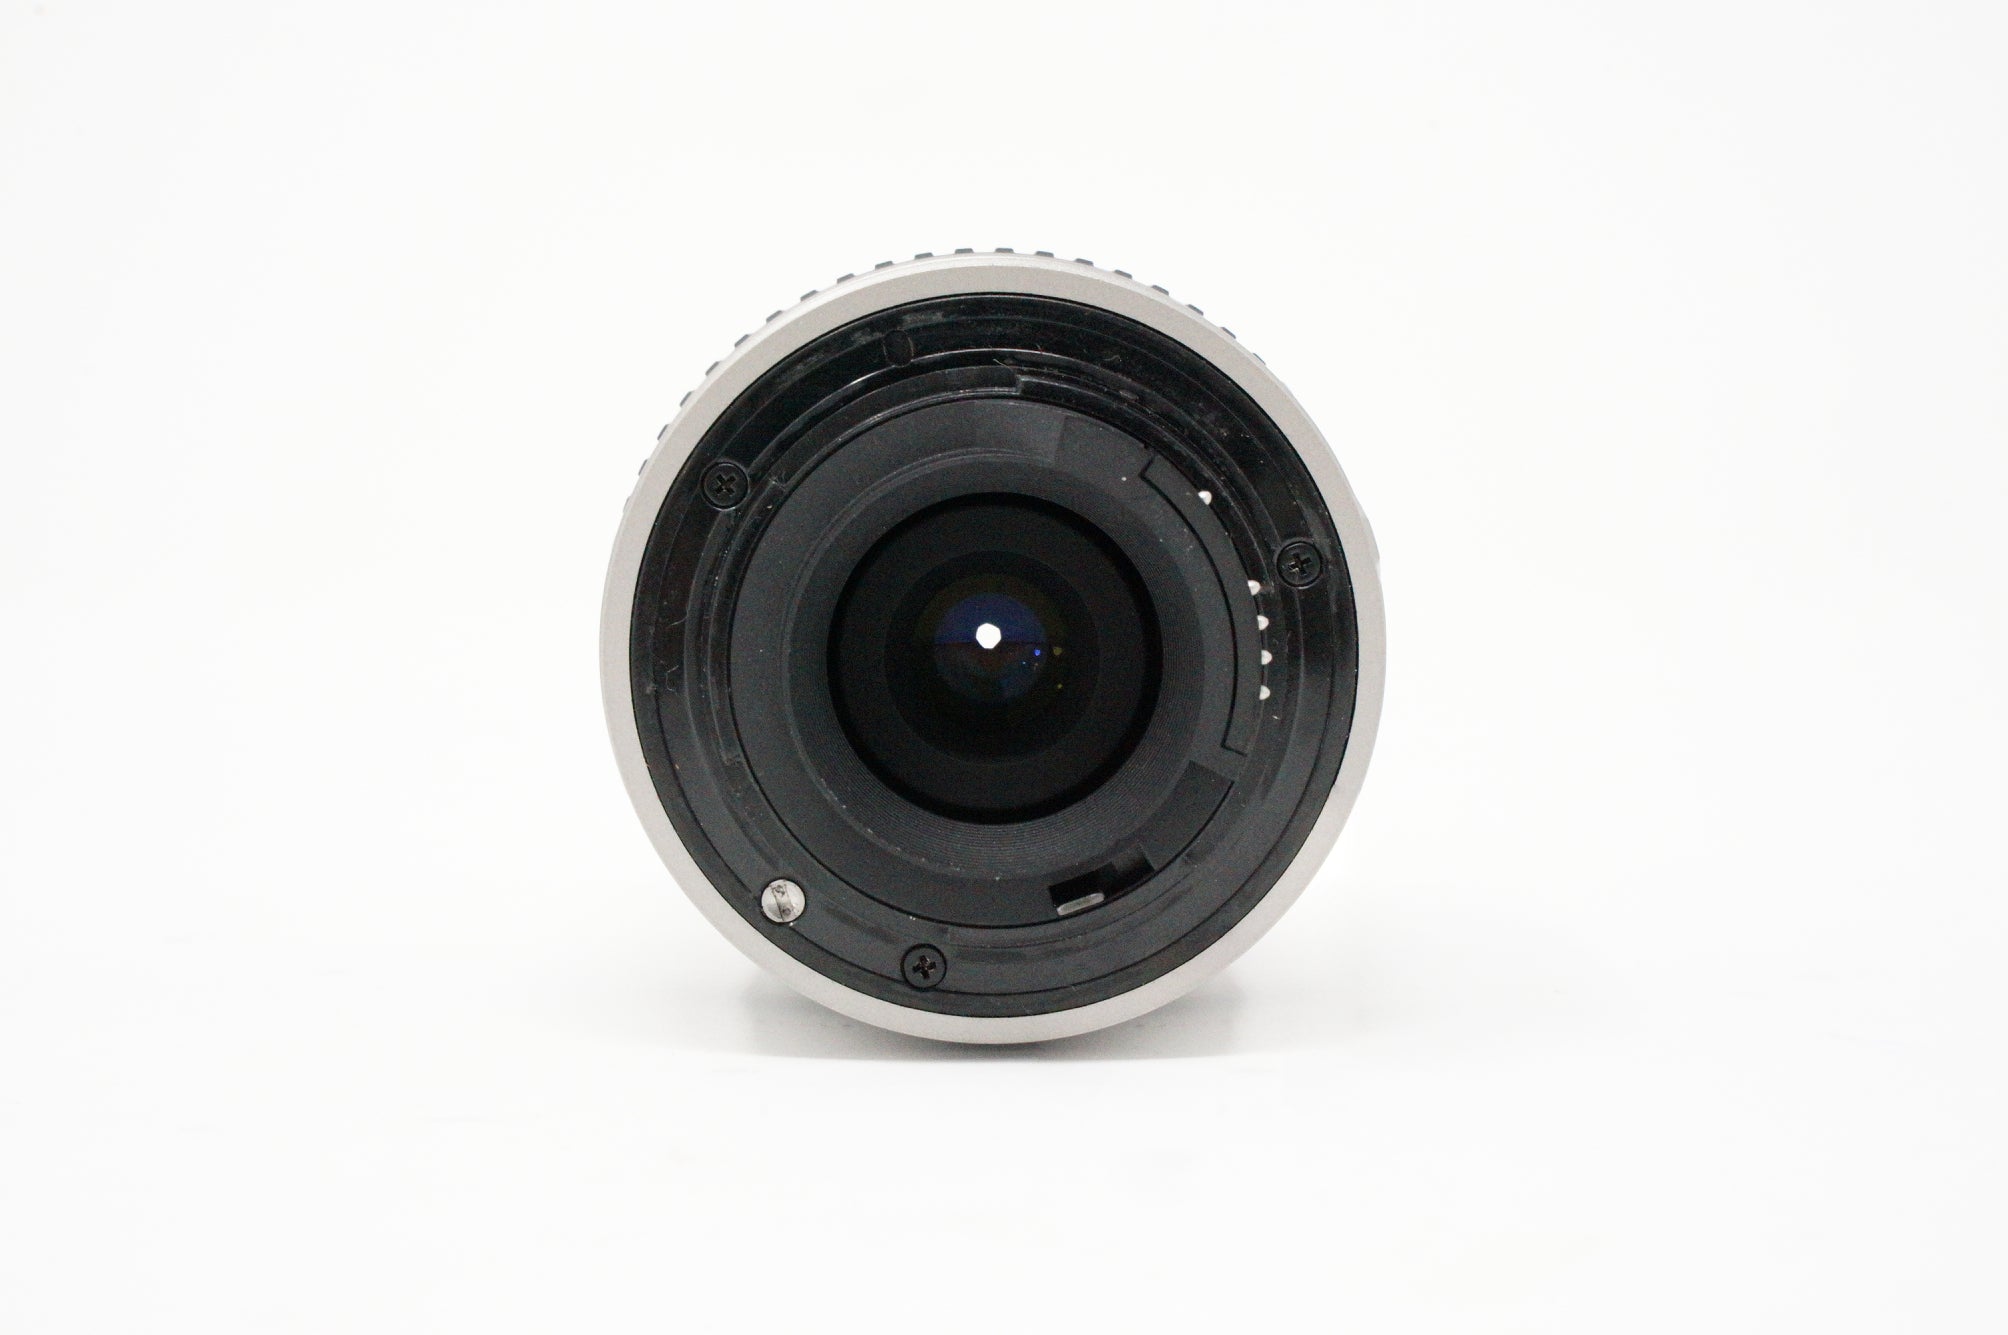 Image of Nikon AF Nikkor 28-80mm F/3.5-5.6G lens rear